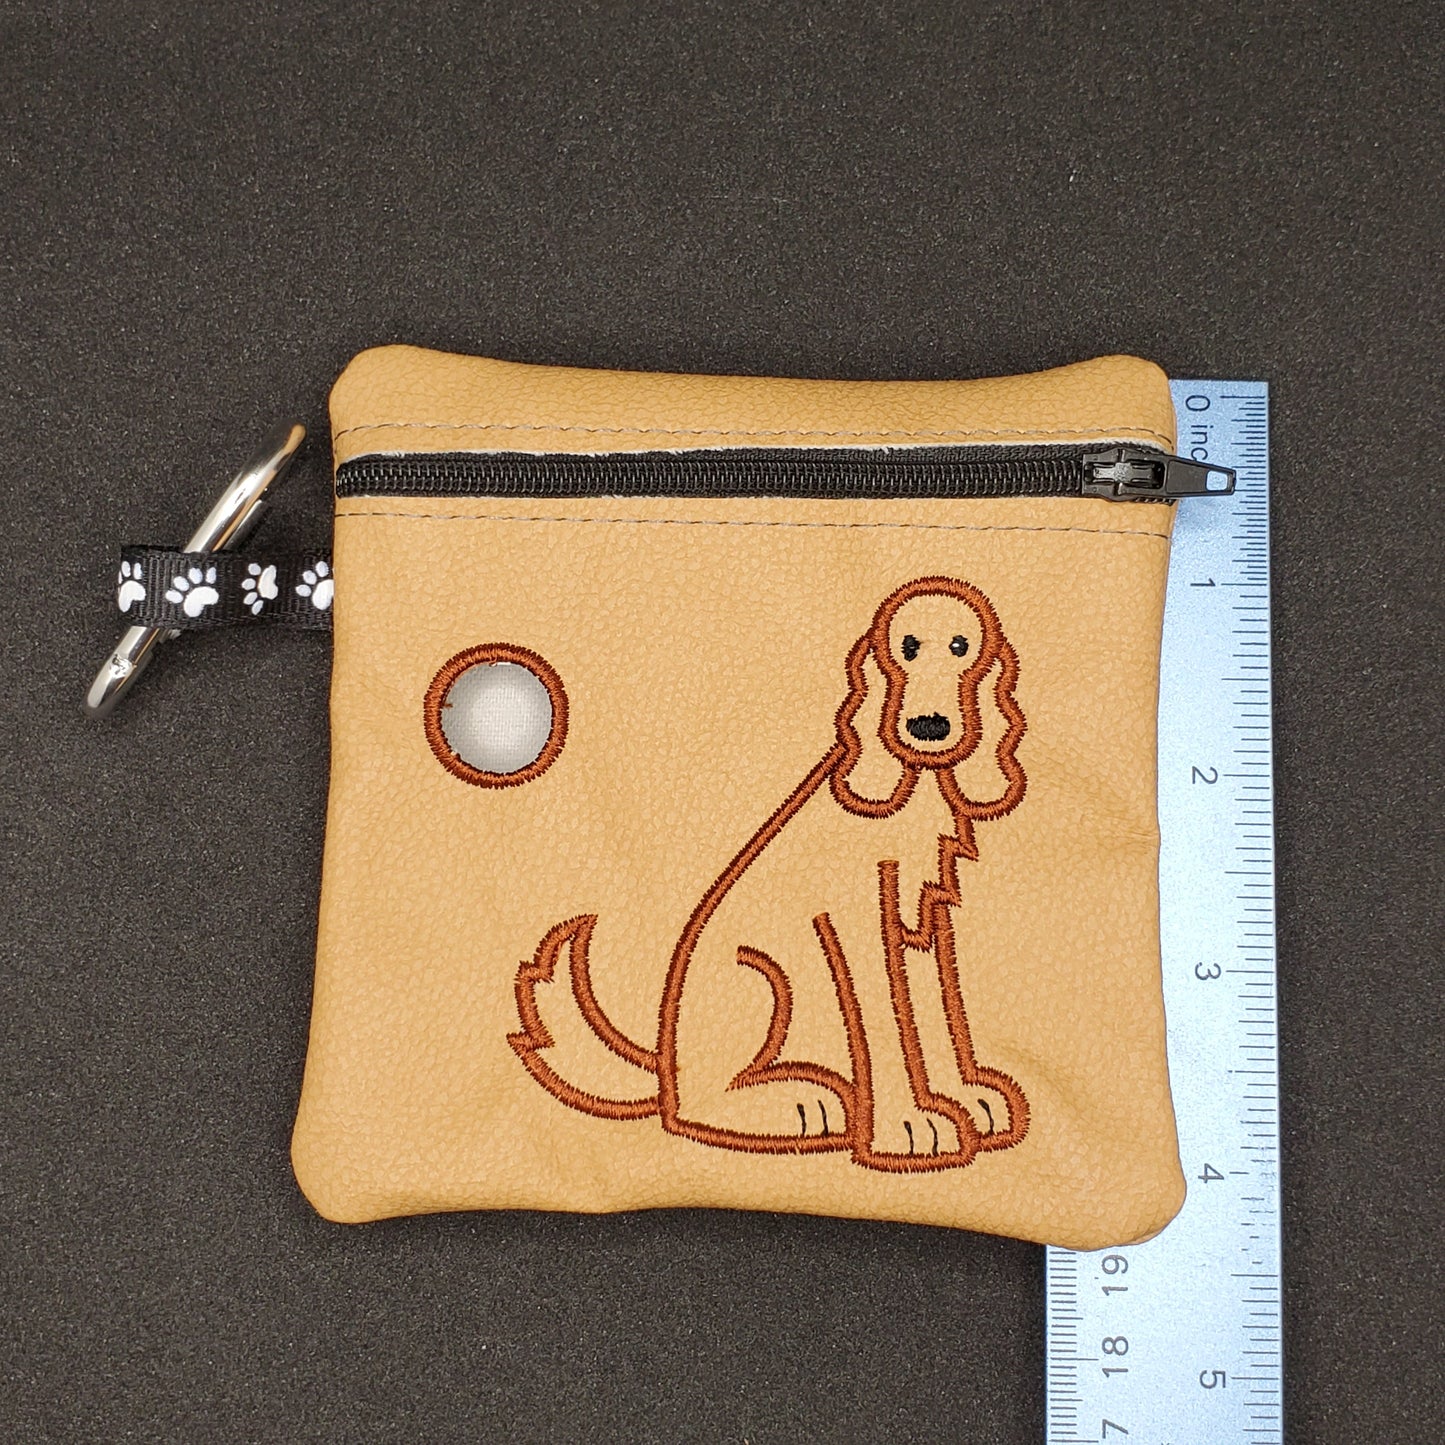 Irish Setter Red Setter - Dog Poo / Pet Poo/waste bag holder